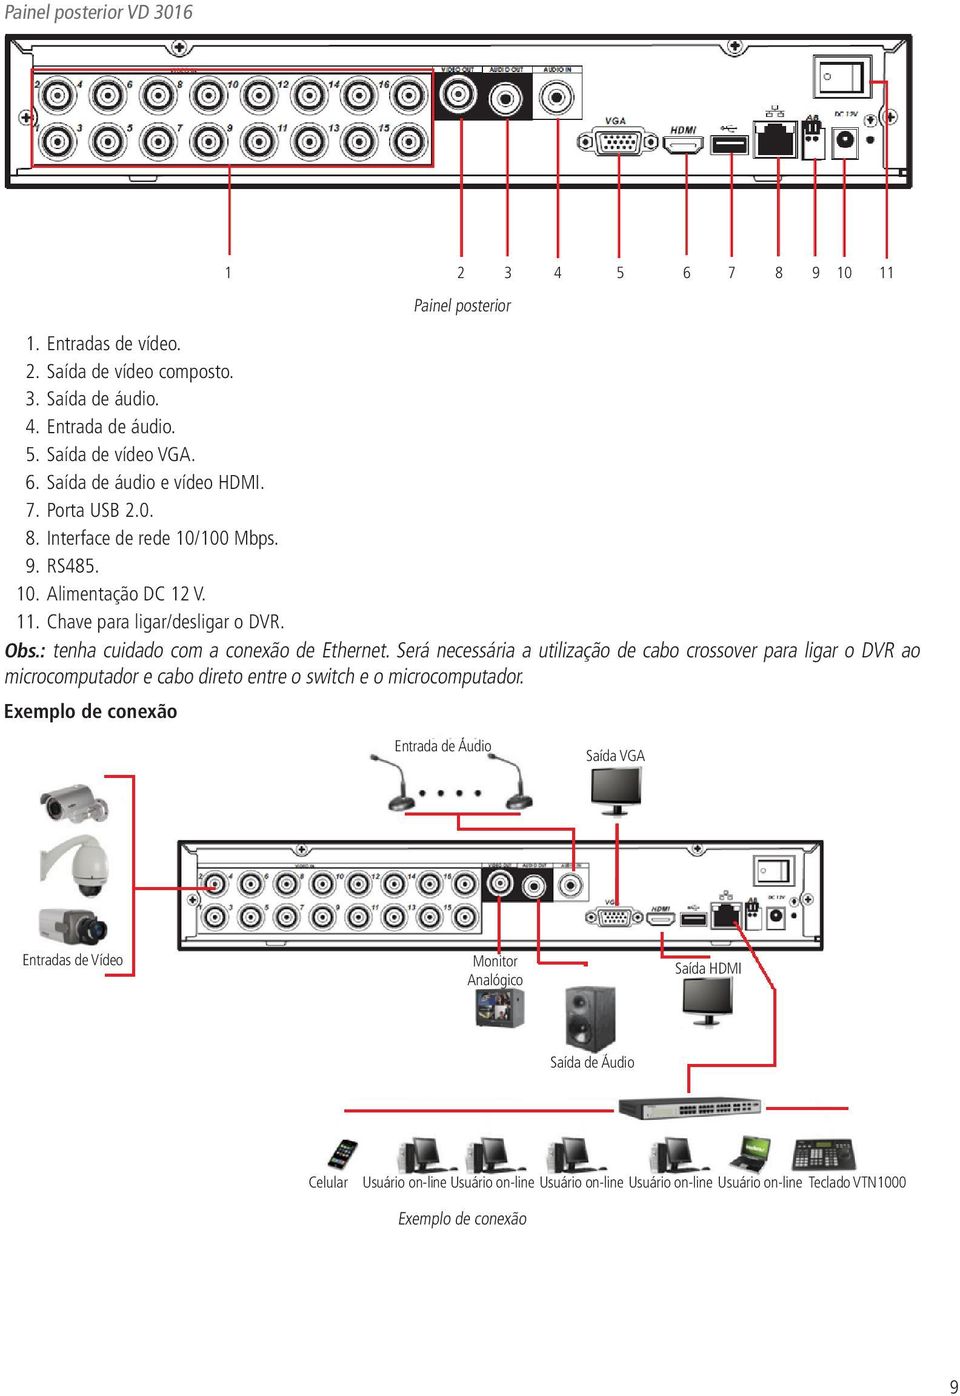 Será necessária a utilização de cabo crossover para ligar o DVR ao microcomputador e cabo direto entre o switch e o microcomputador.